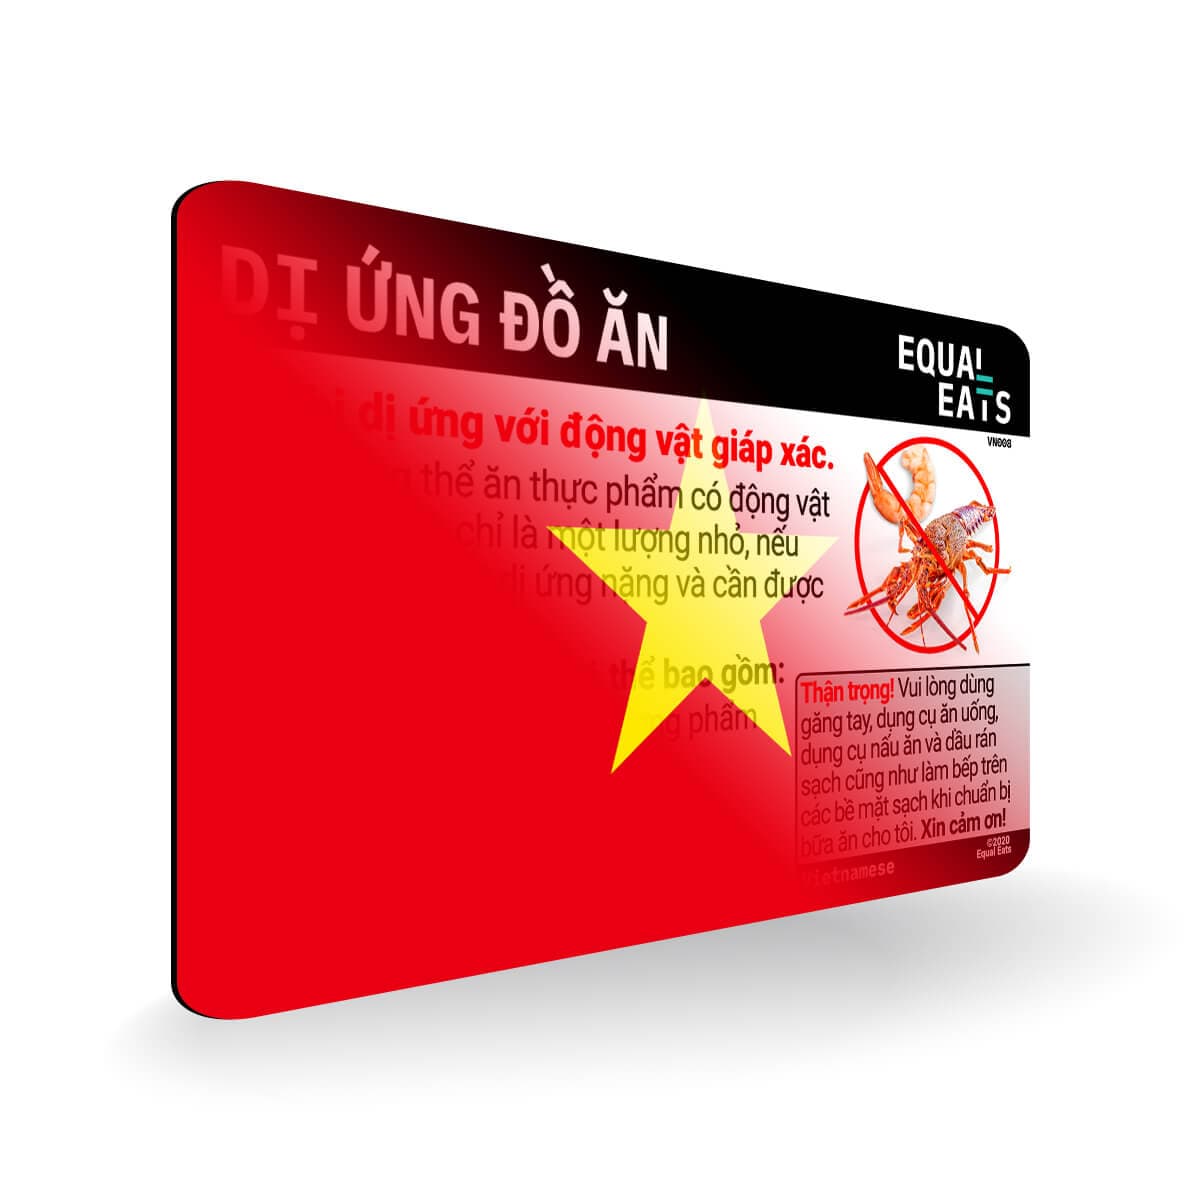 Crustacean Allergy in Vietnamese. Crustacean Allergy Card for Vietnam